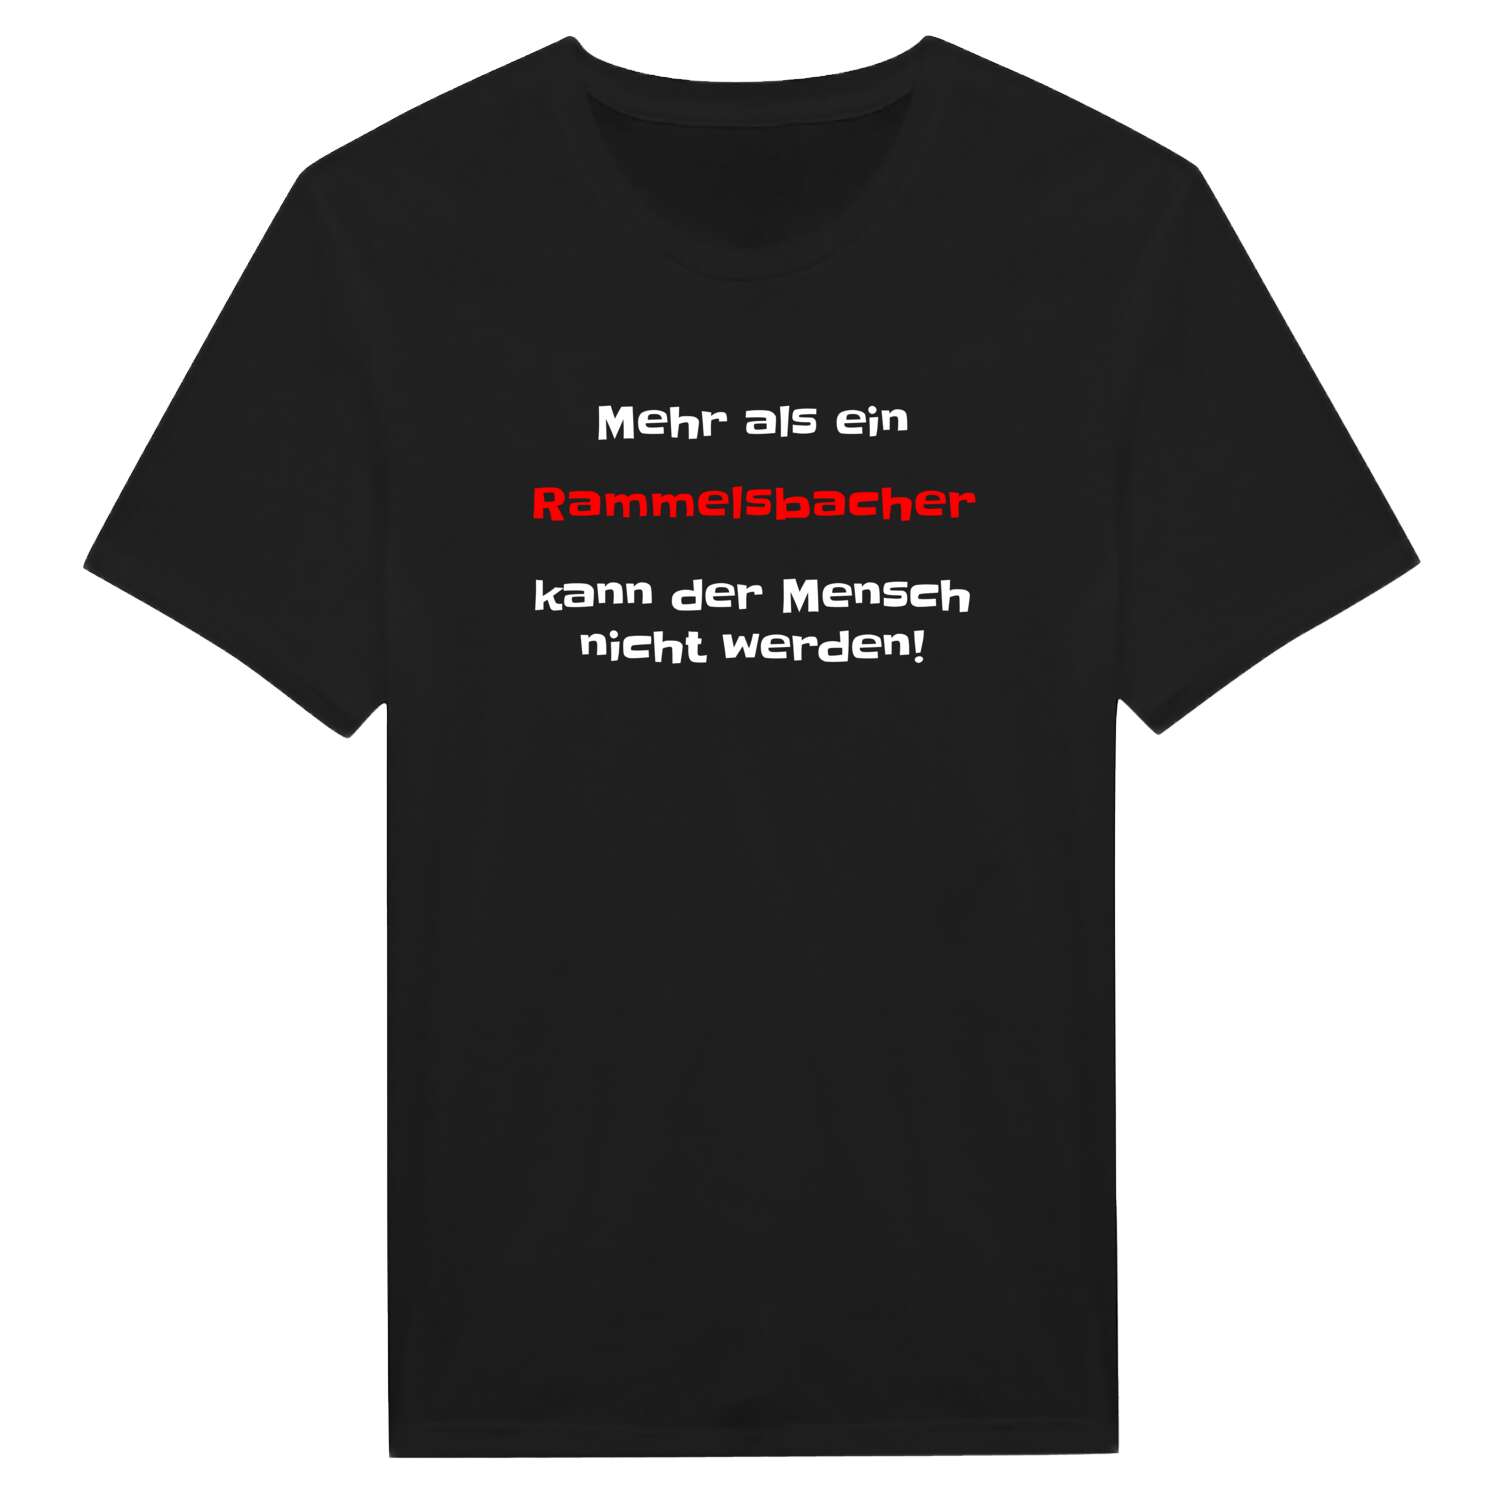 Rammelsbach T-Shirt »Mehr als ein«